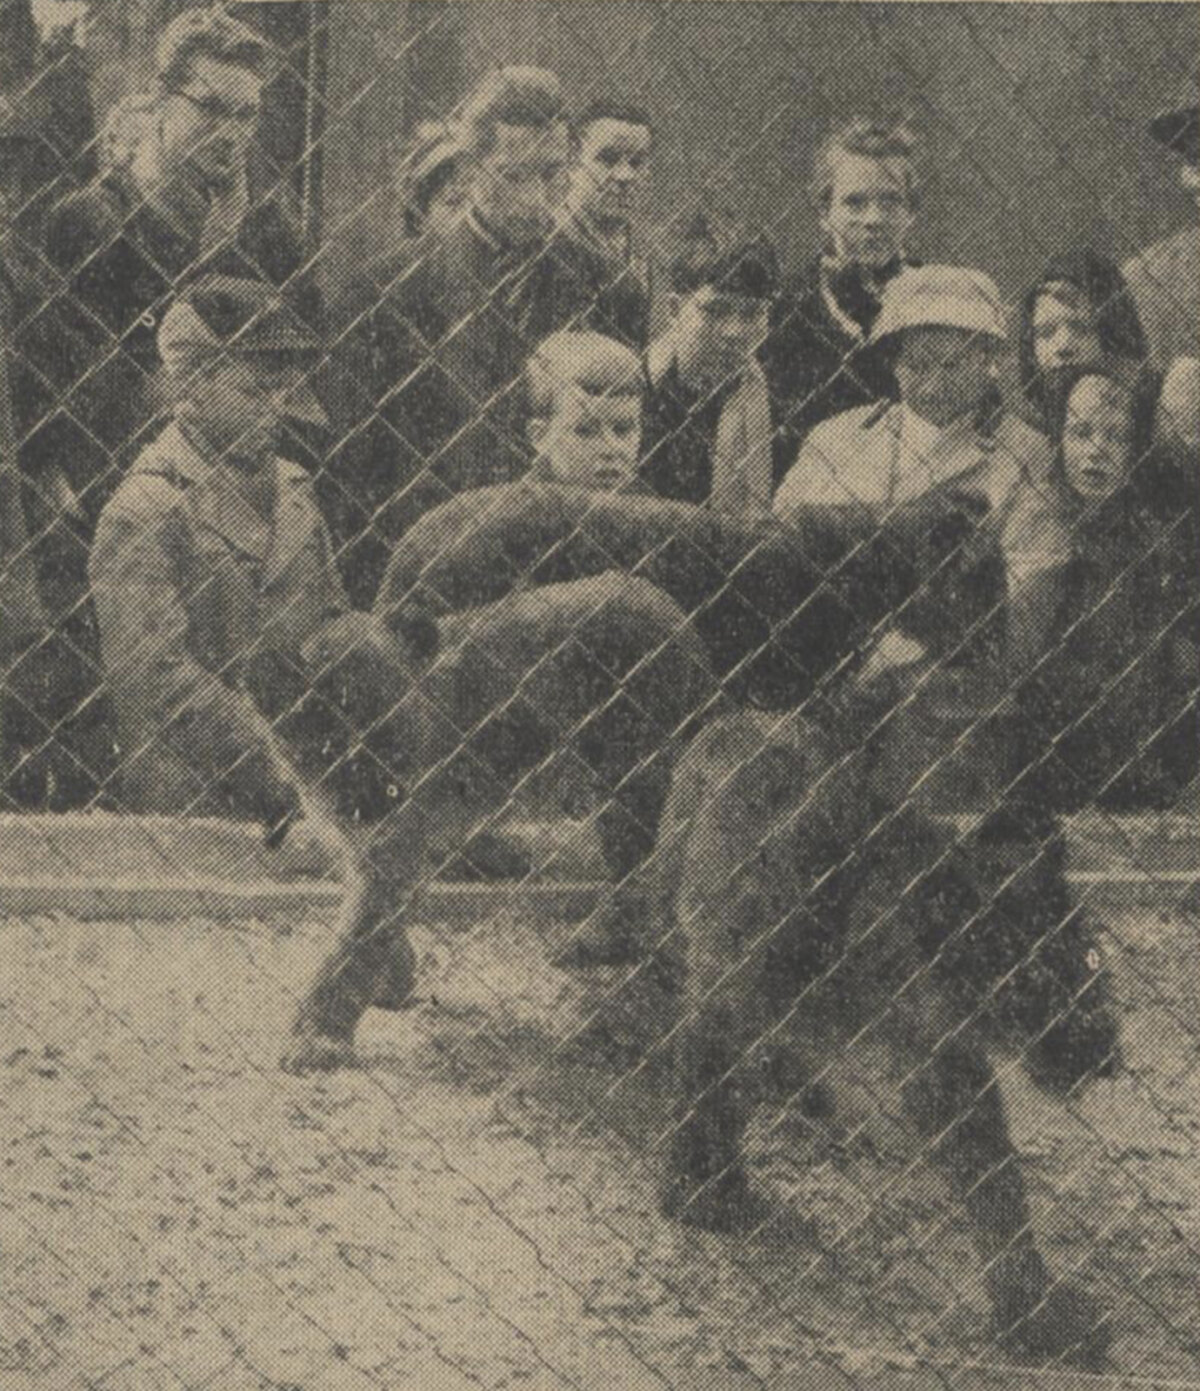 Mensen op de Steenweg vergapen zich aan de jonge leeuwen. (De waarheid, 17-12-1959)